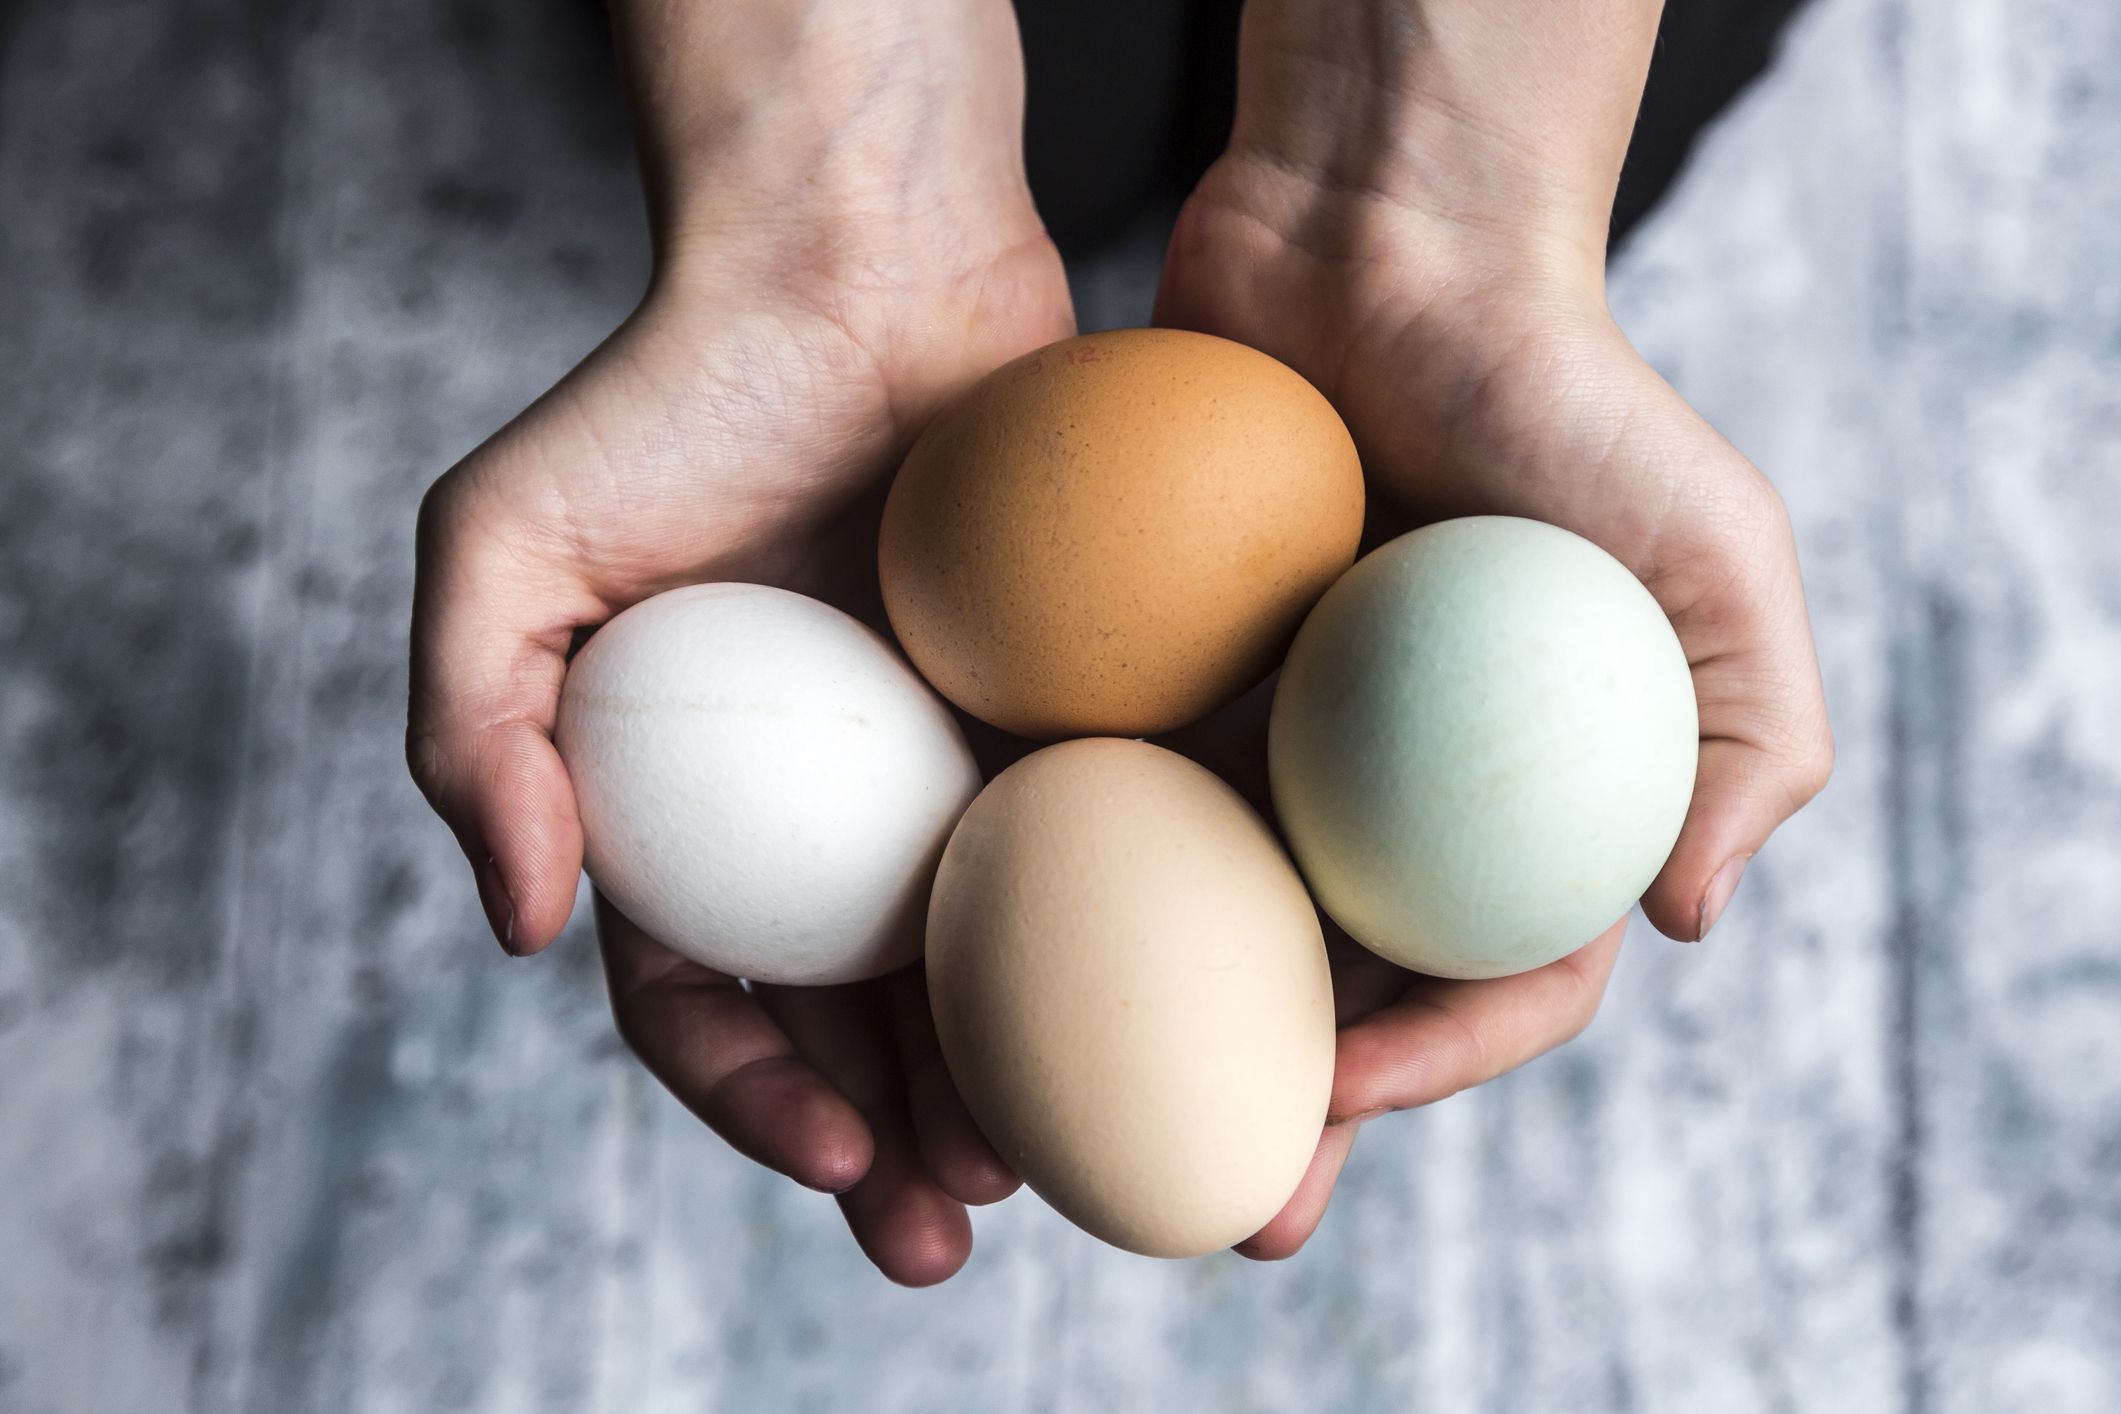 まさに完全食 卵 の栄養素と健康効果を栄養士が解説